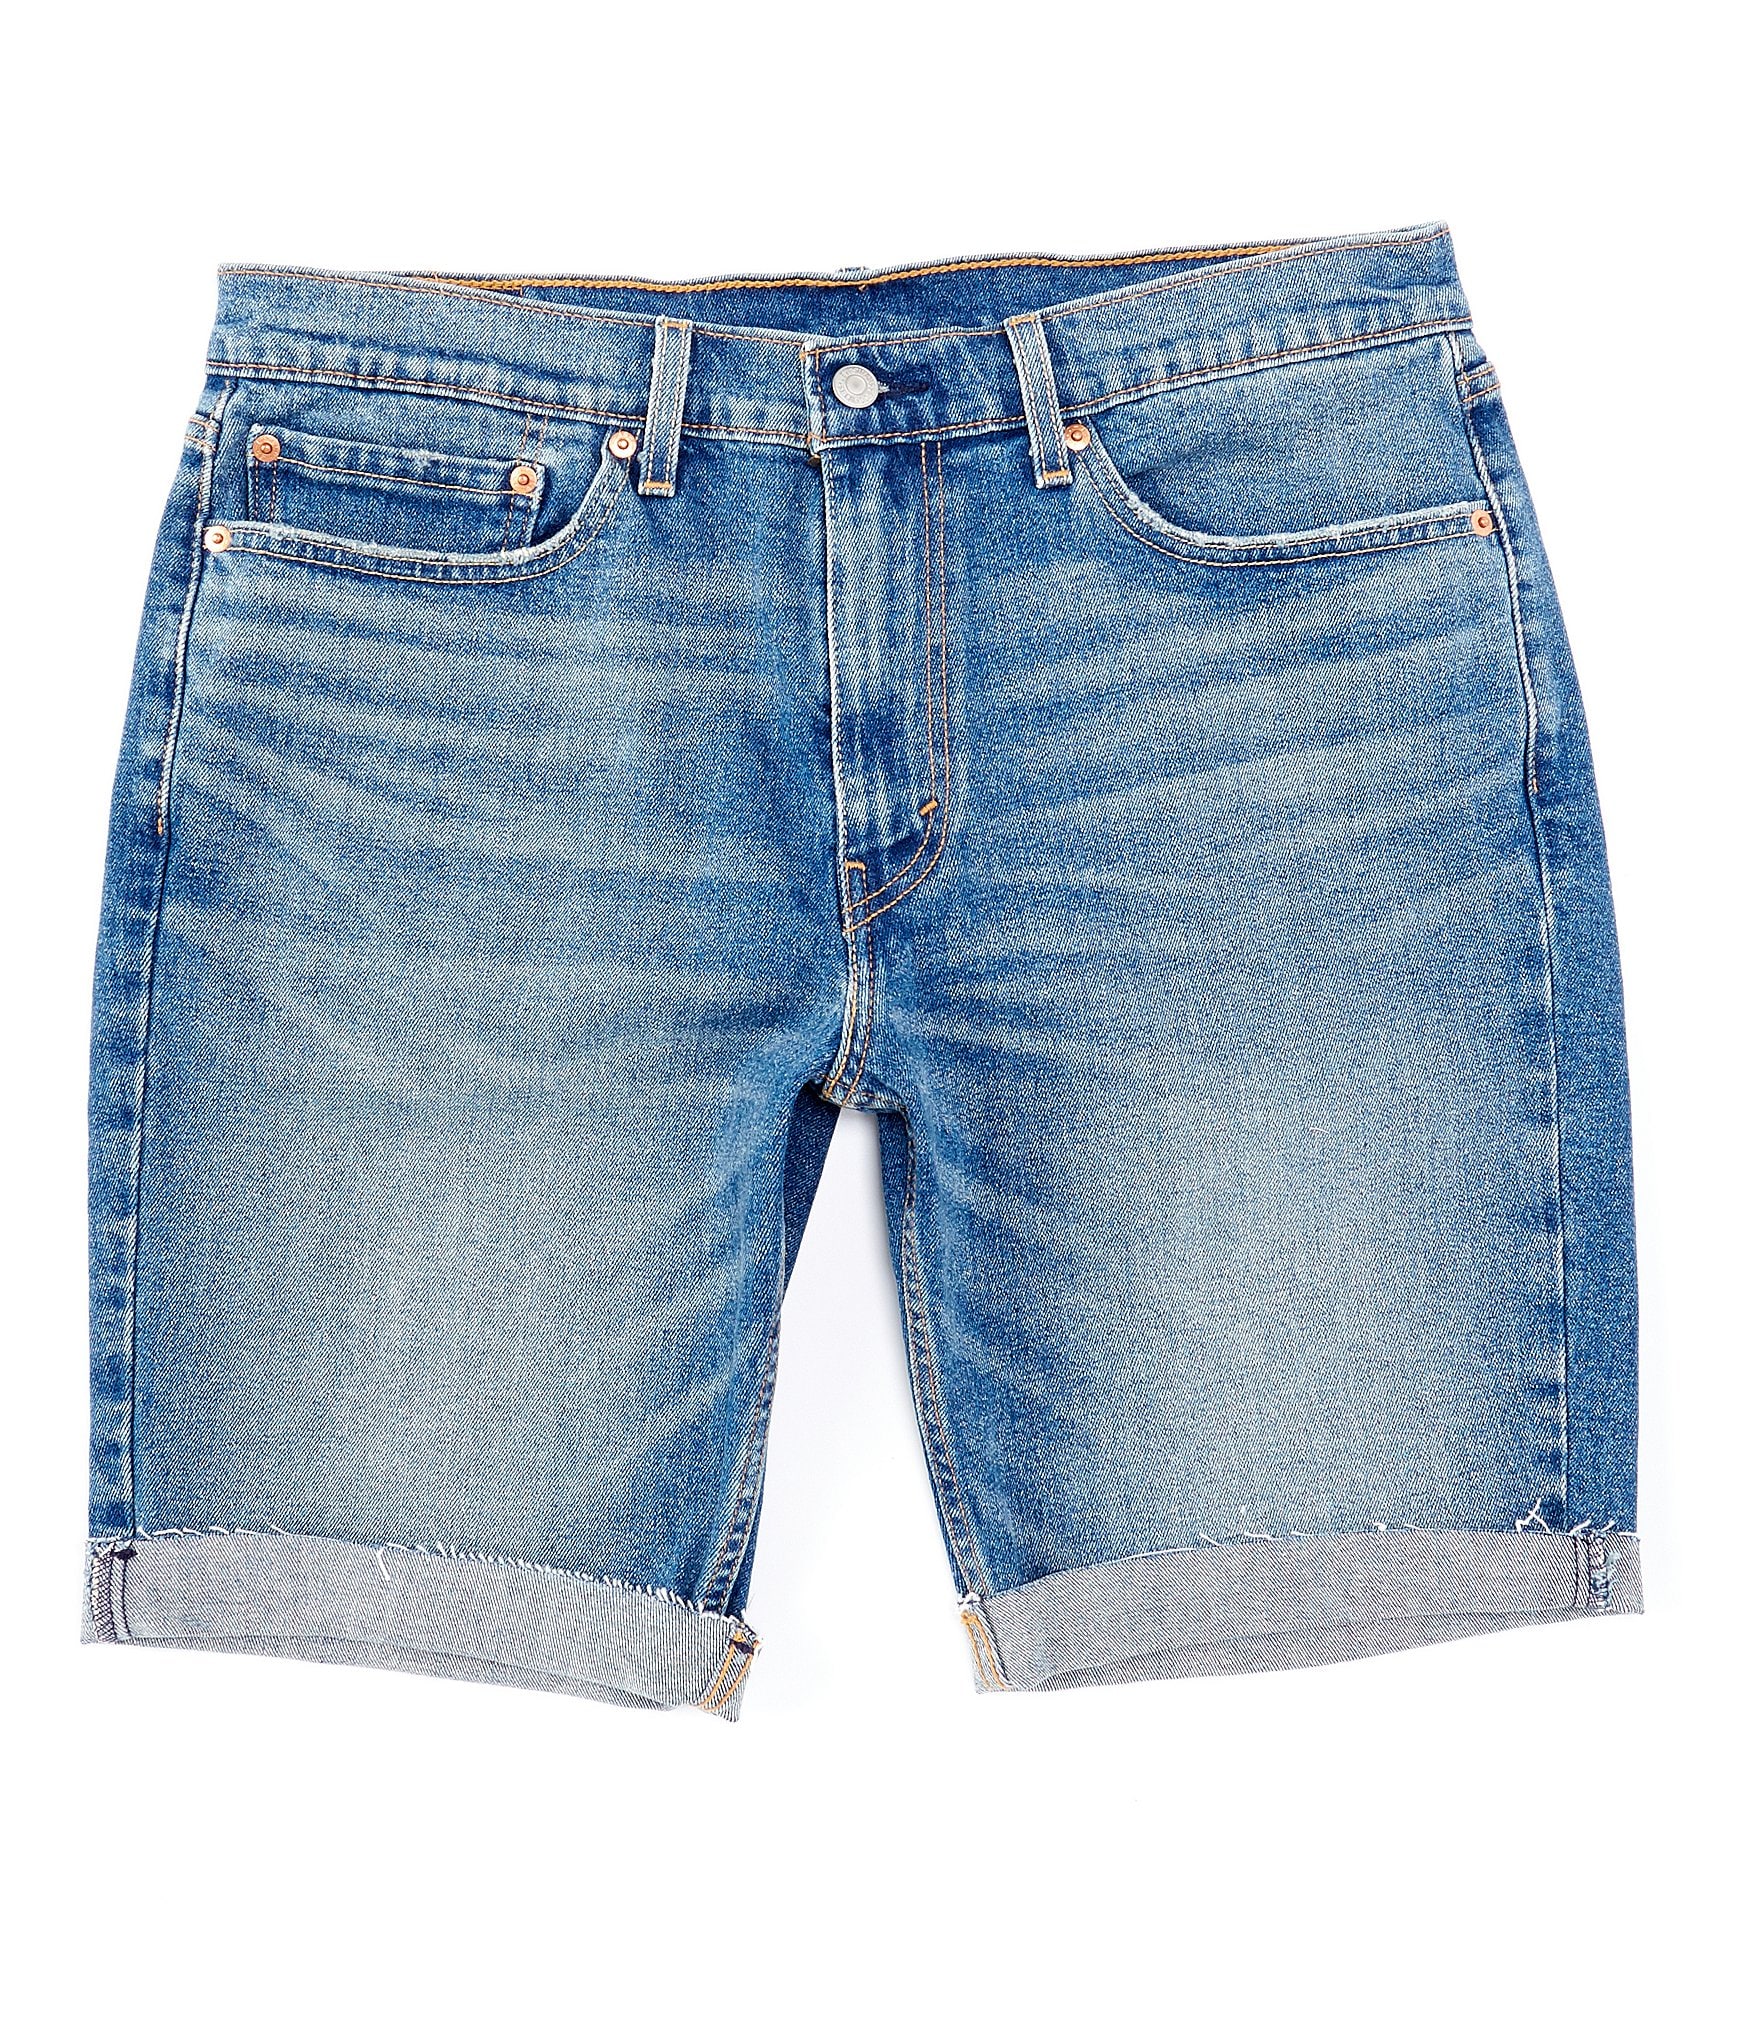 levis jeans shorts mens